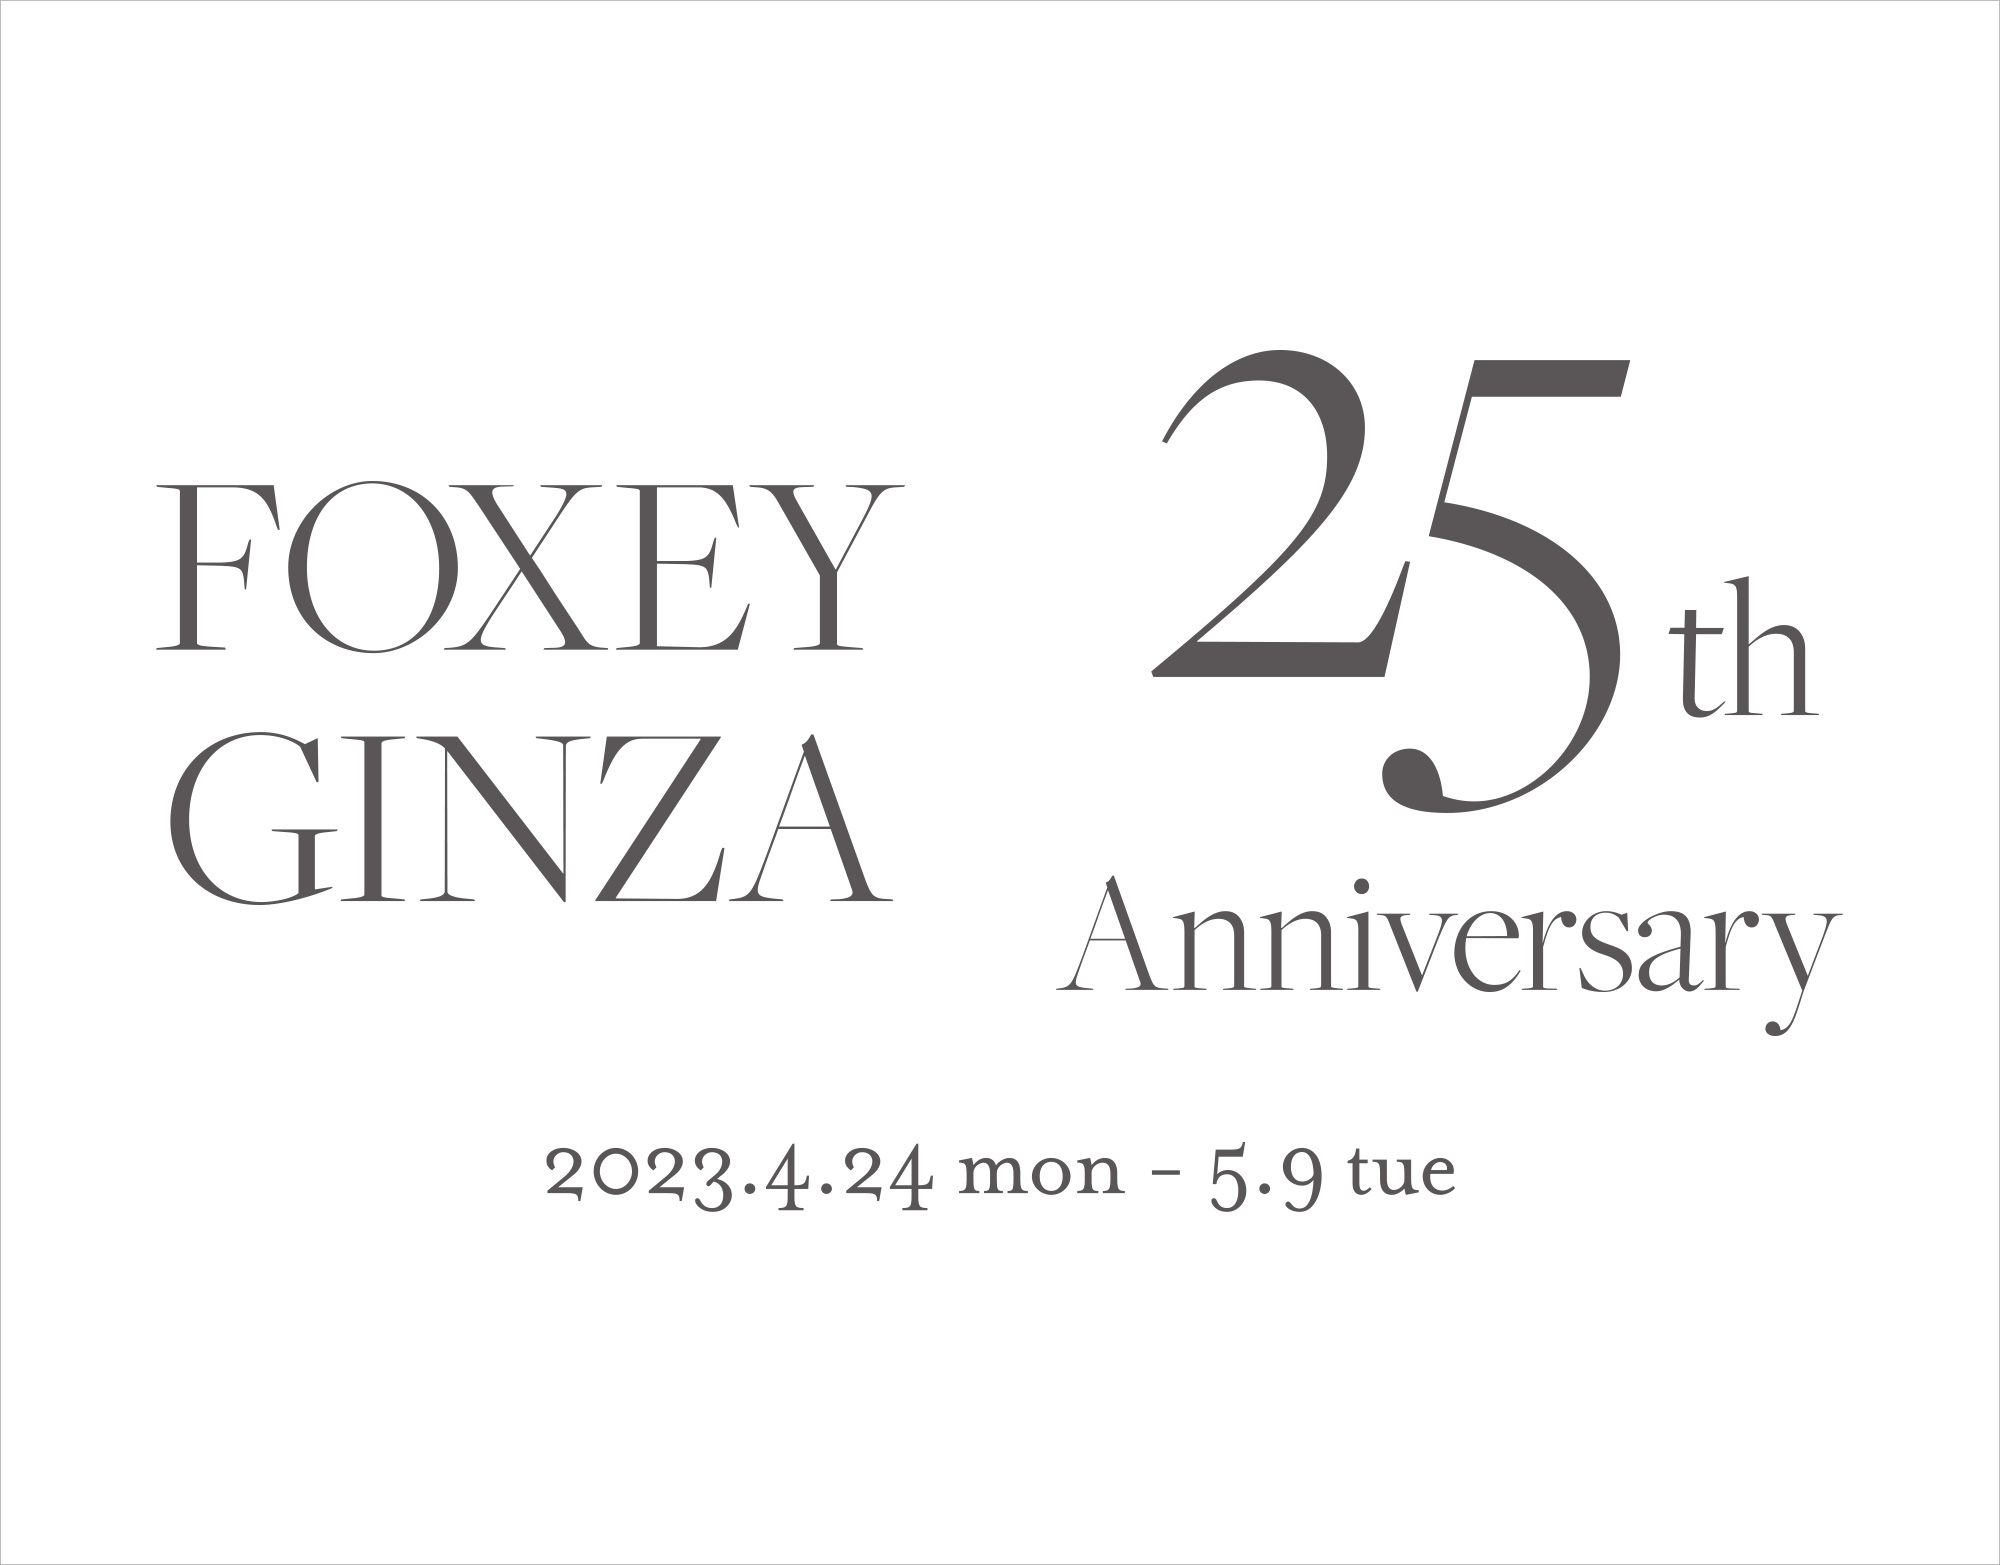 FOXEY GINZA 25th ANNIVERSARY | FOXEY